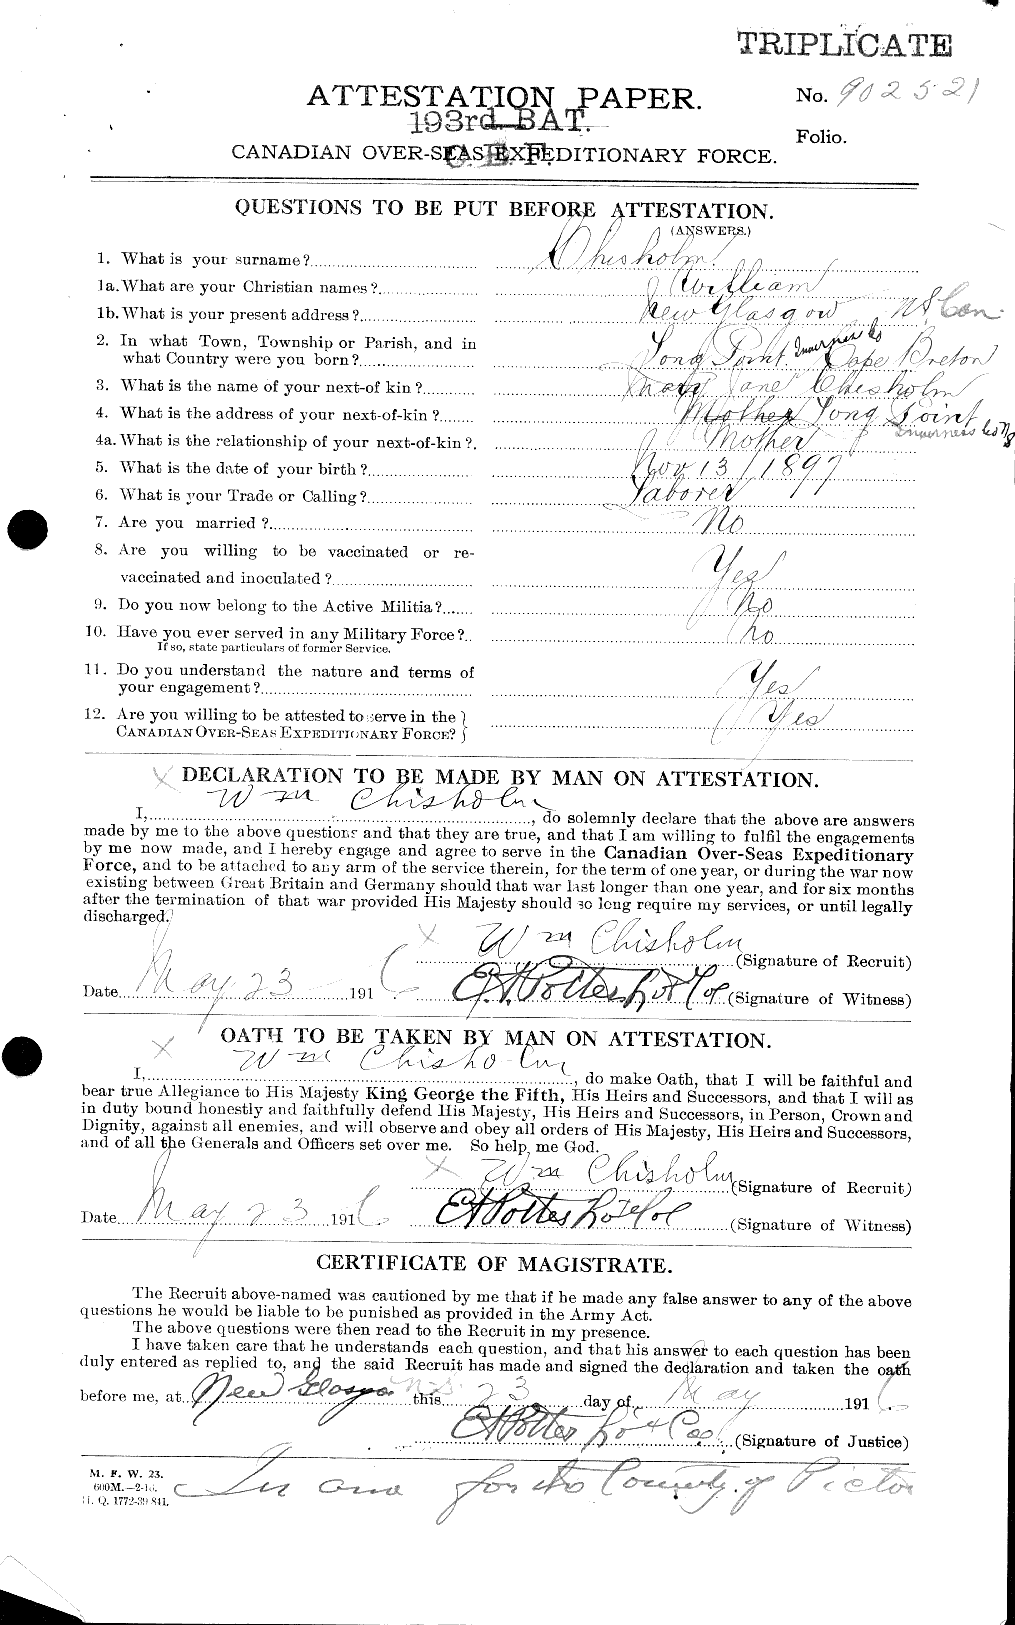 Dossiers du Personnel de la Première Guerre mondiale - CEC 020355a